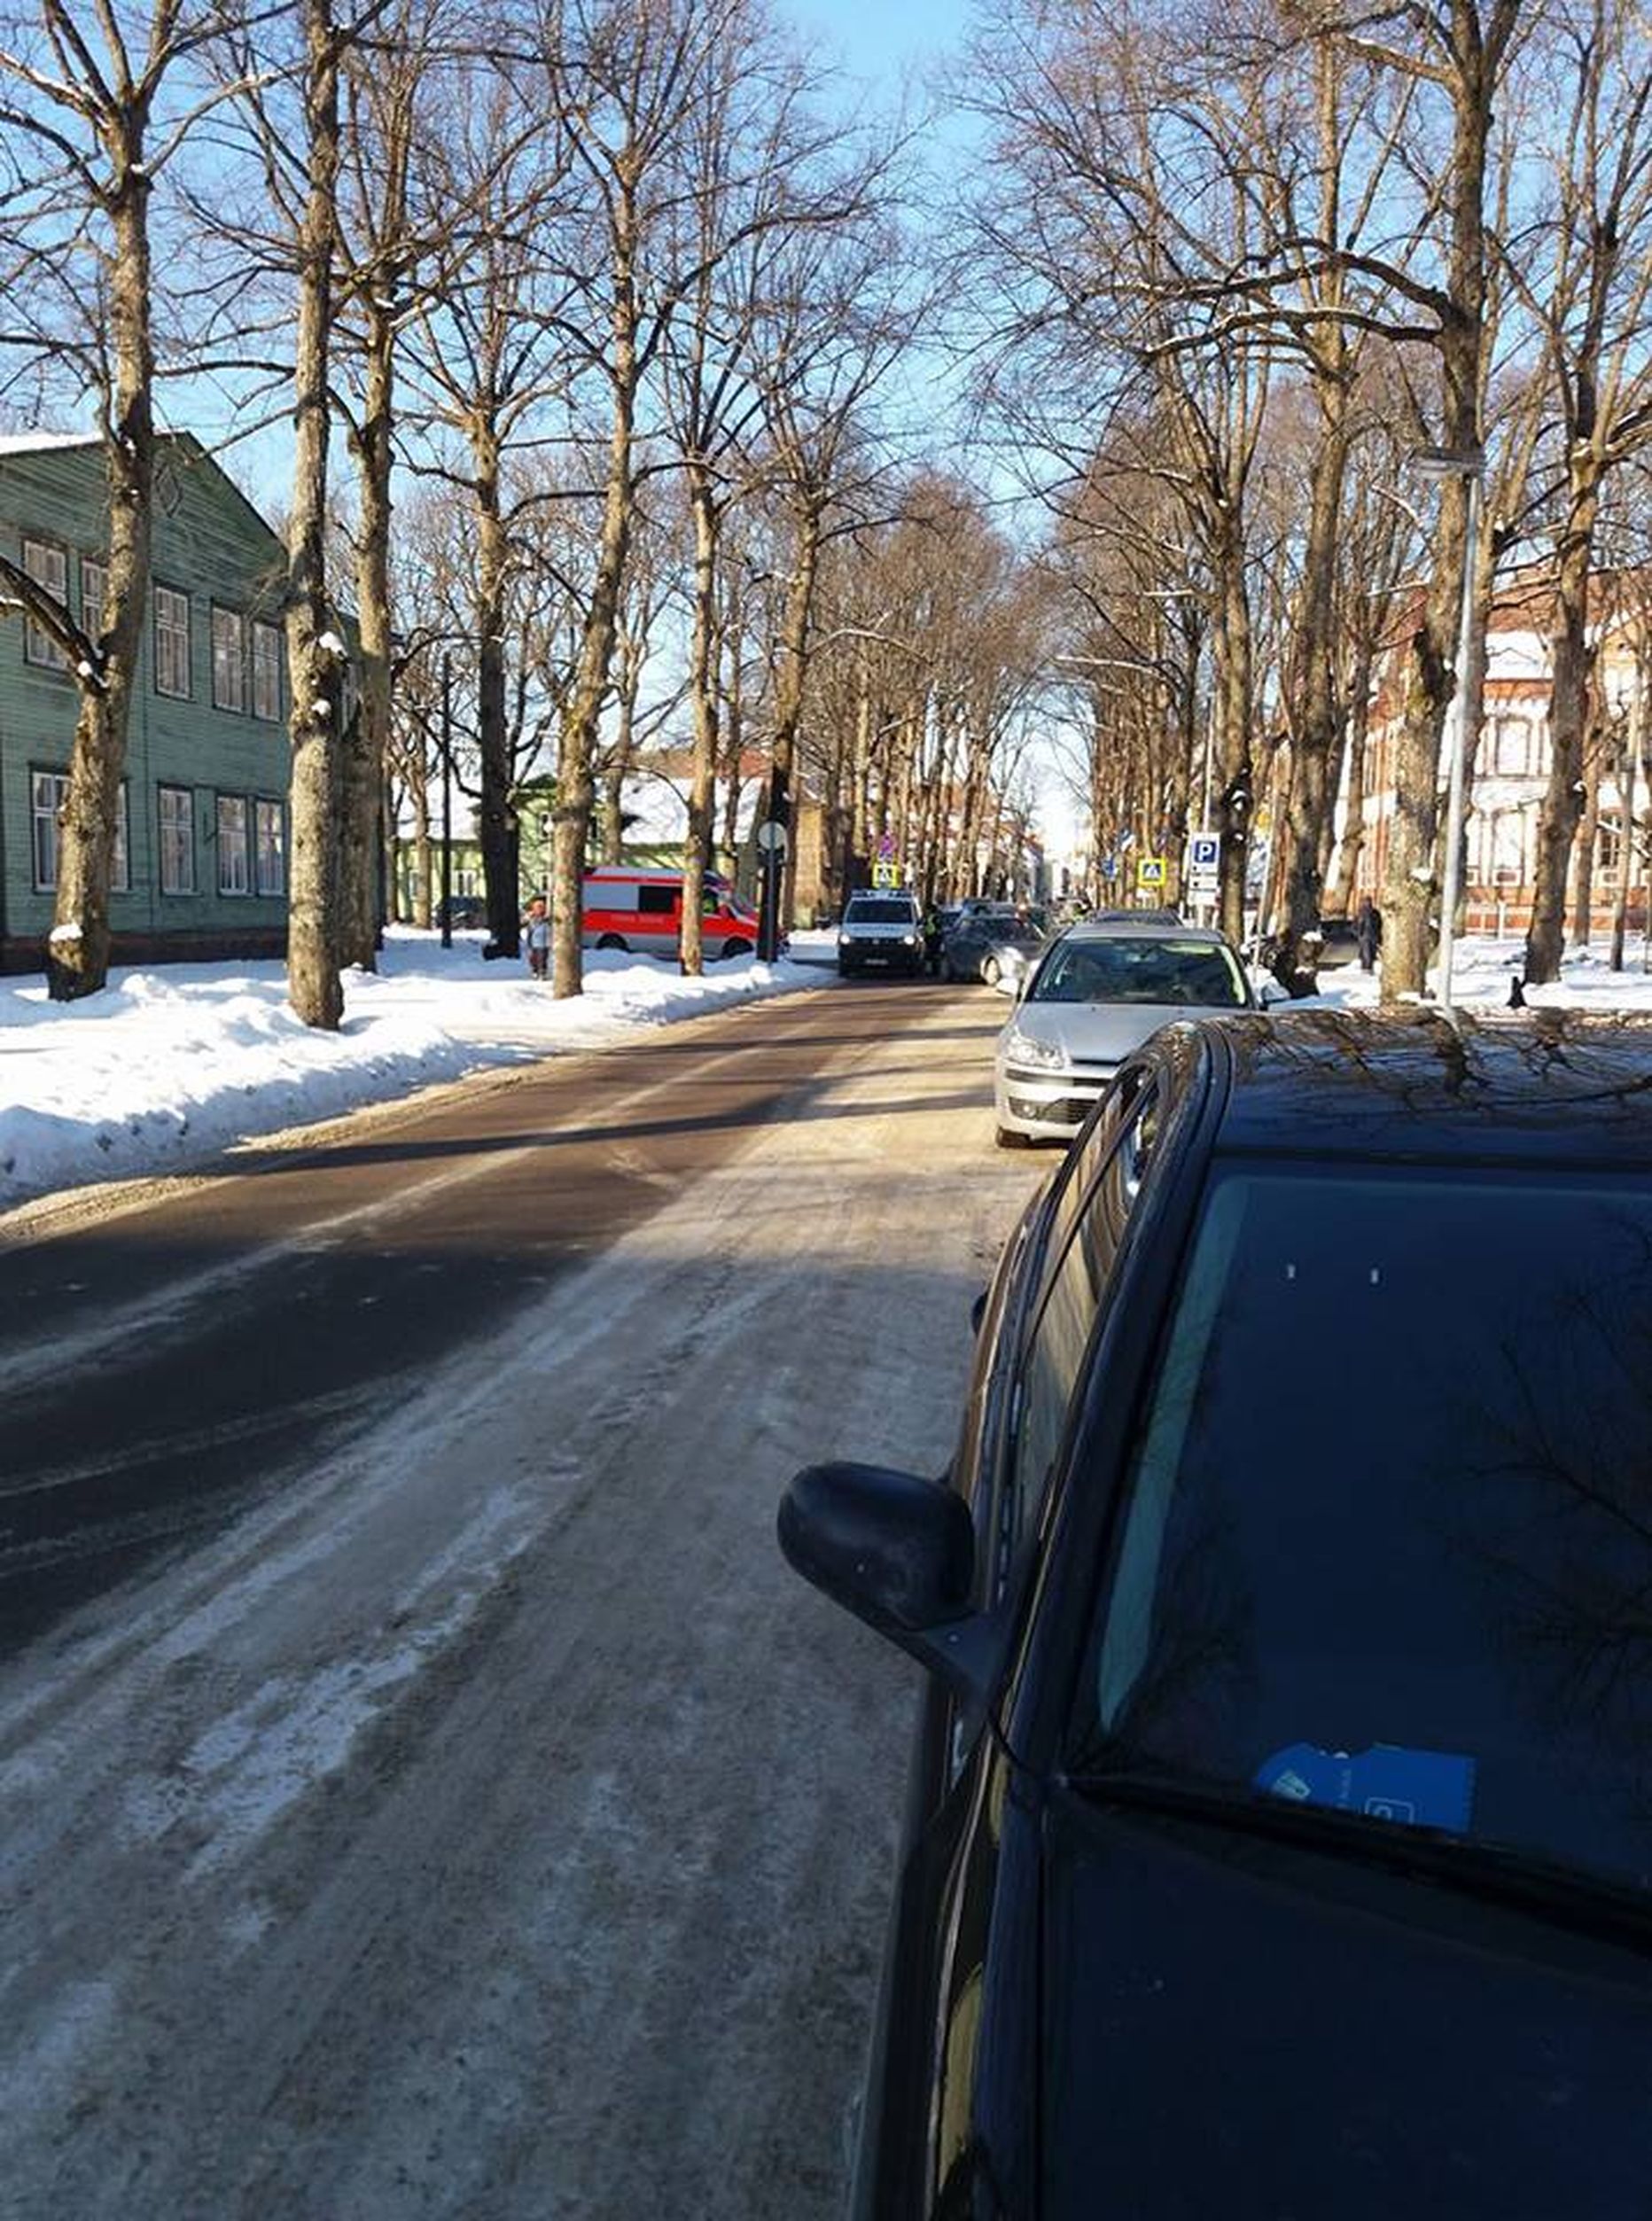 Täna pärastlõunal põrkasid Pärnus Nikolai ja Ringi tänava ristmikul kaks sõiduautot. Inimesed õnnetuses tõsisemalt viga ei saanud, liiklus ristmikul oli õnnetuse tõttu mõnda aega häiritud.